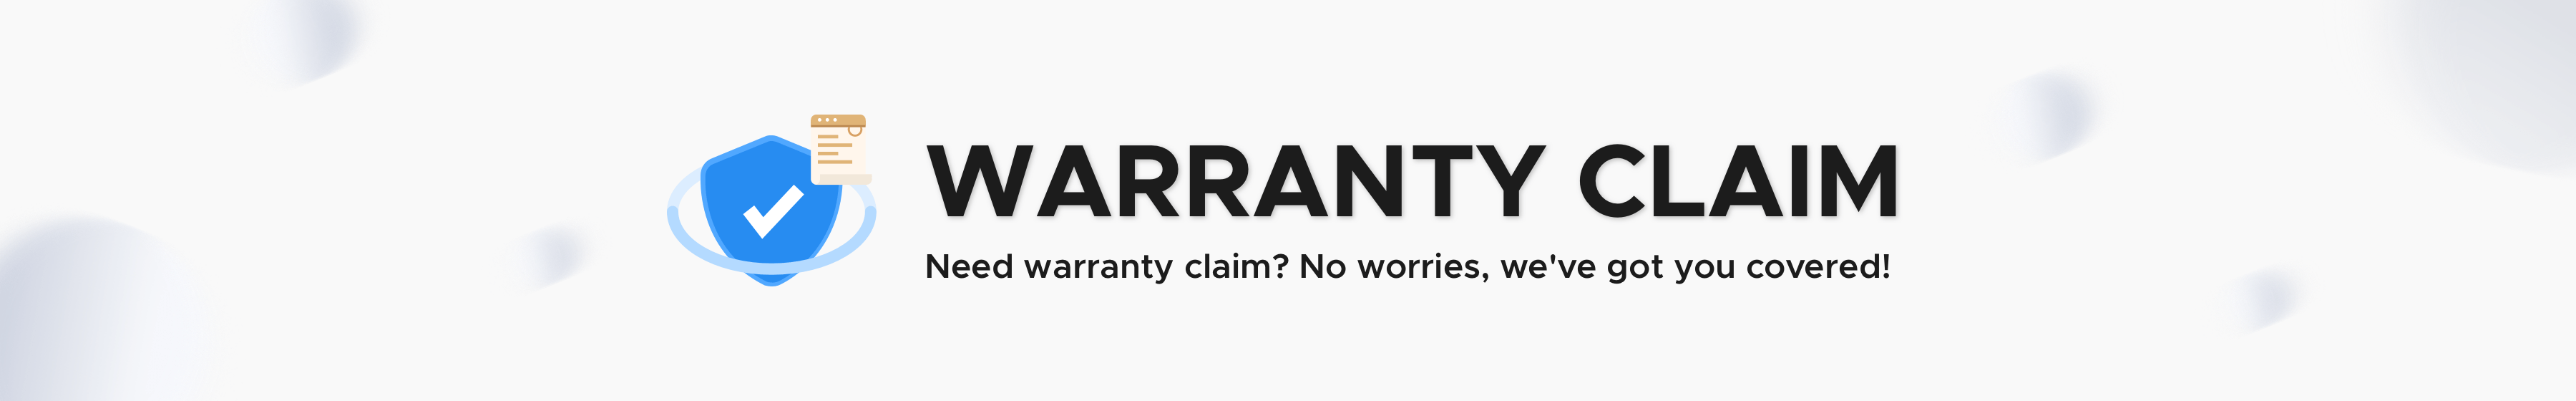 Warranty Claim